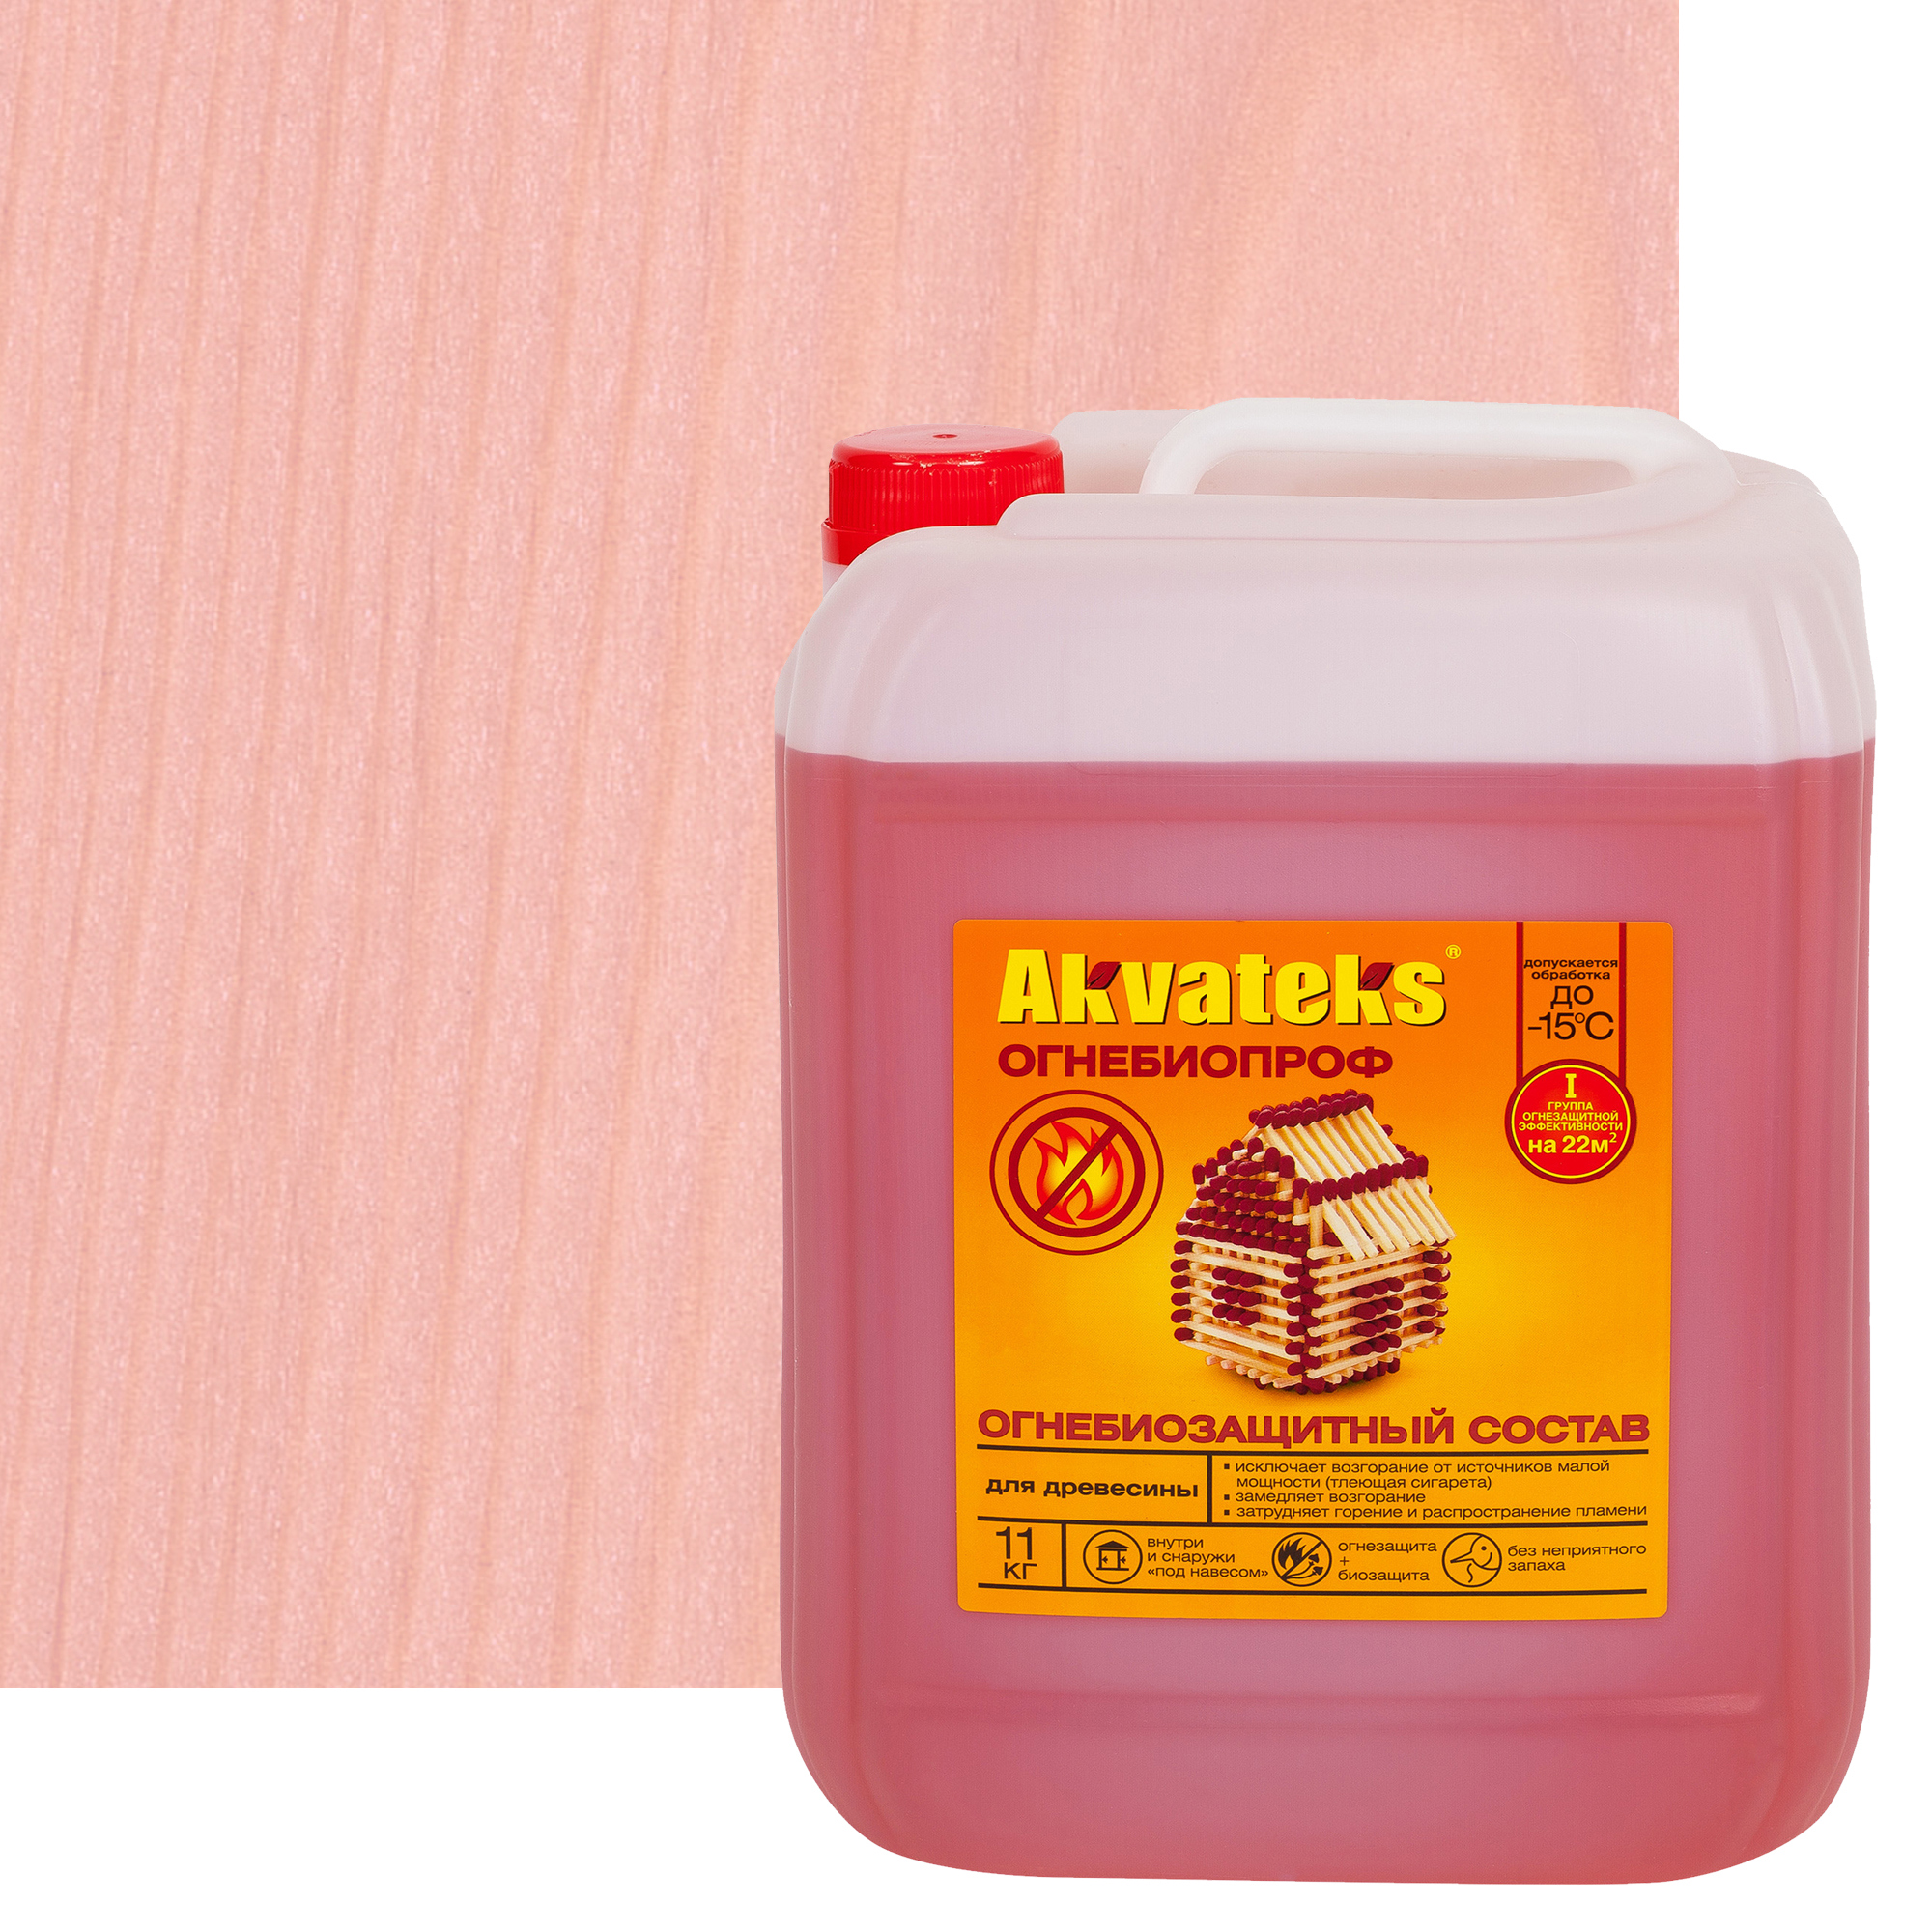 82167113 Огнебиозащитный пропиточный состав для древесины Akvateks DIY I и II-я группа эффективности цвет индикаторный розовый 11 кг STLM-0020888 АКВАТЕКС